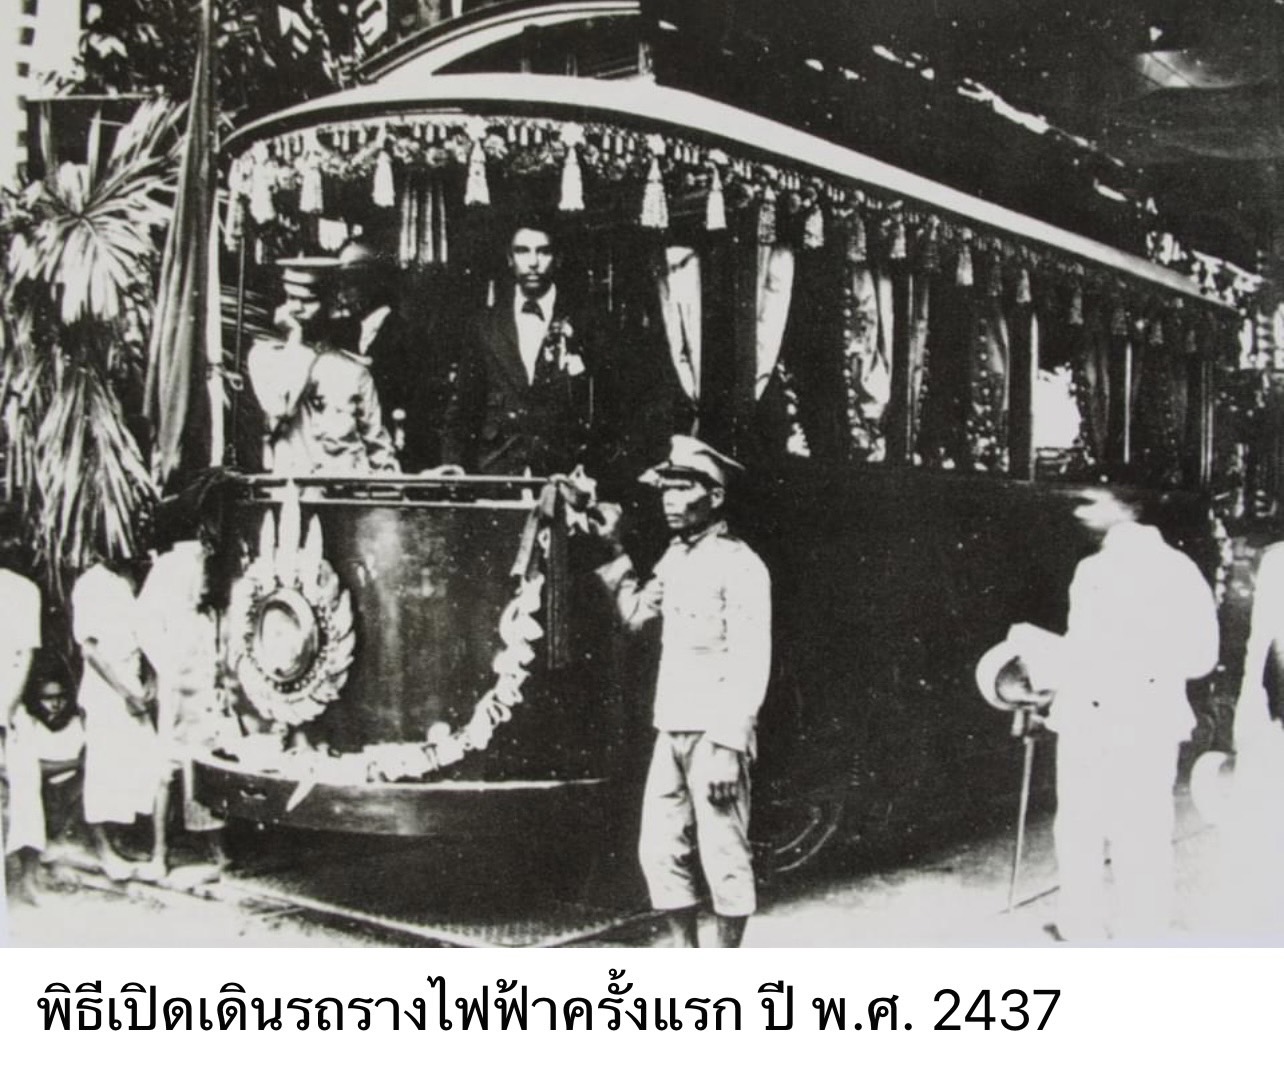 เปิดเดินรถรางสายแรกแห่งสยาม   22 กันยายน พ.ศ. 2431